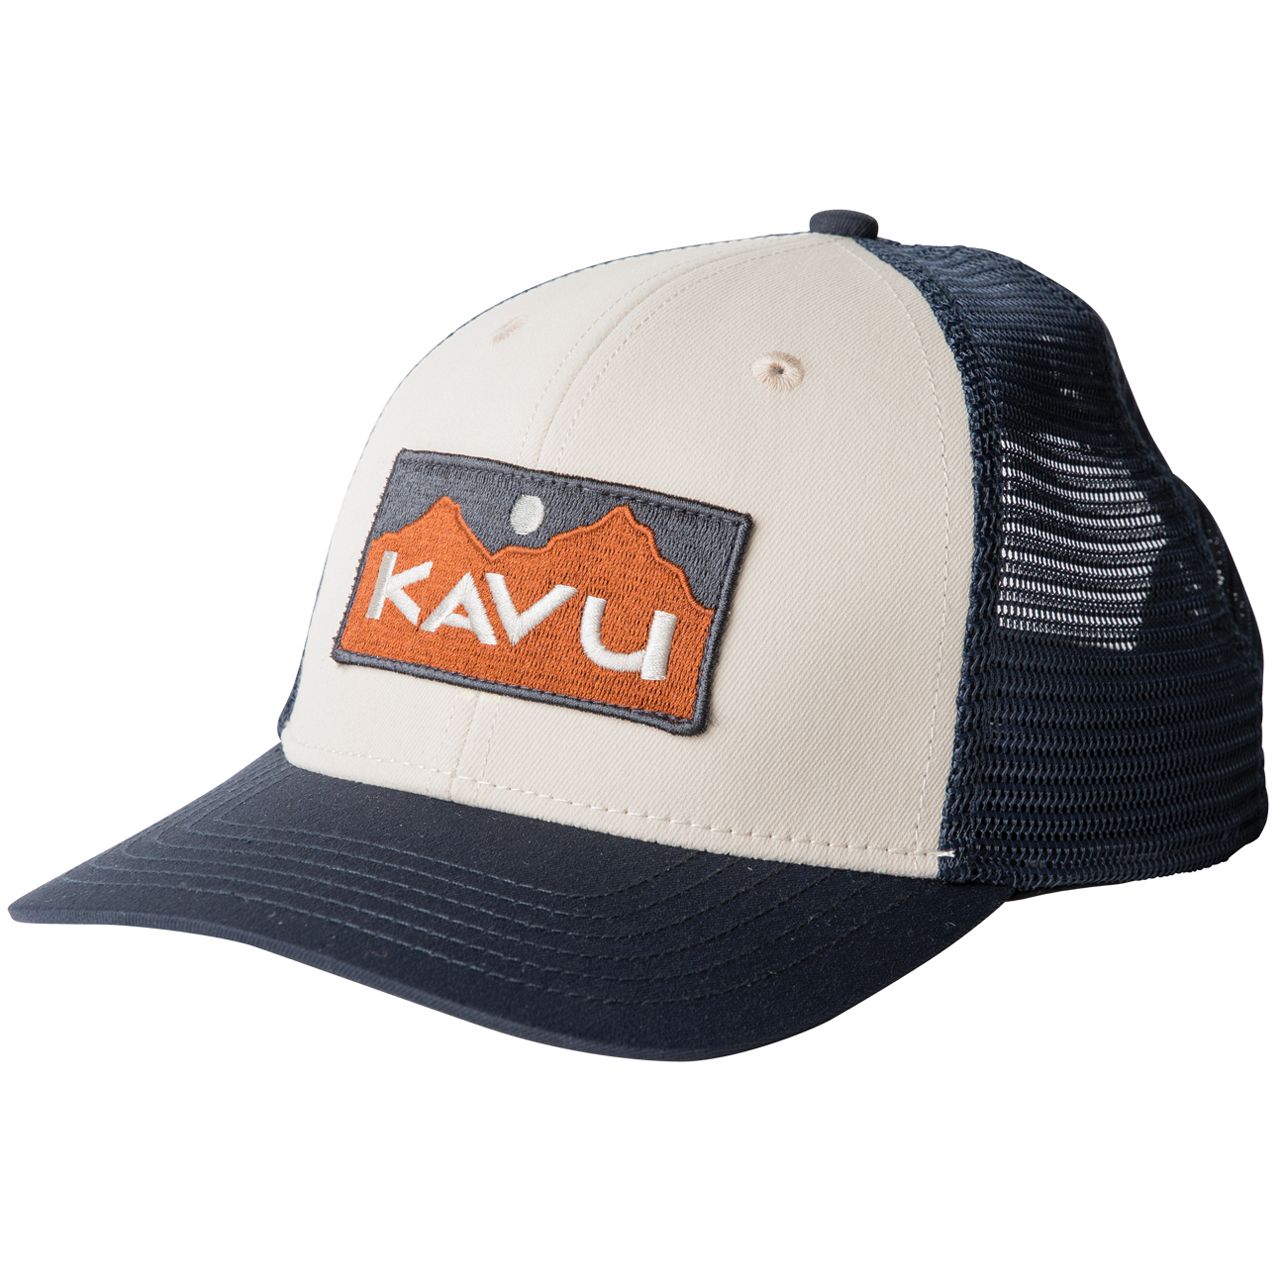 Productfoto van KAVU Above Standard Trucker Cap - River Wild